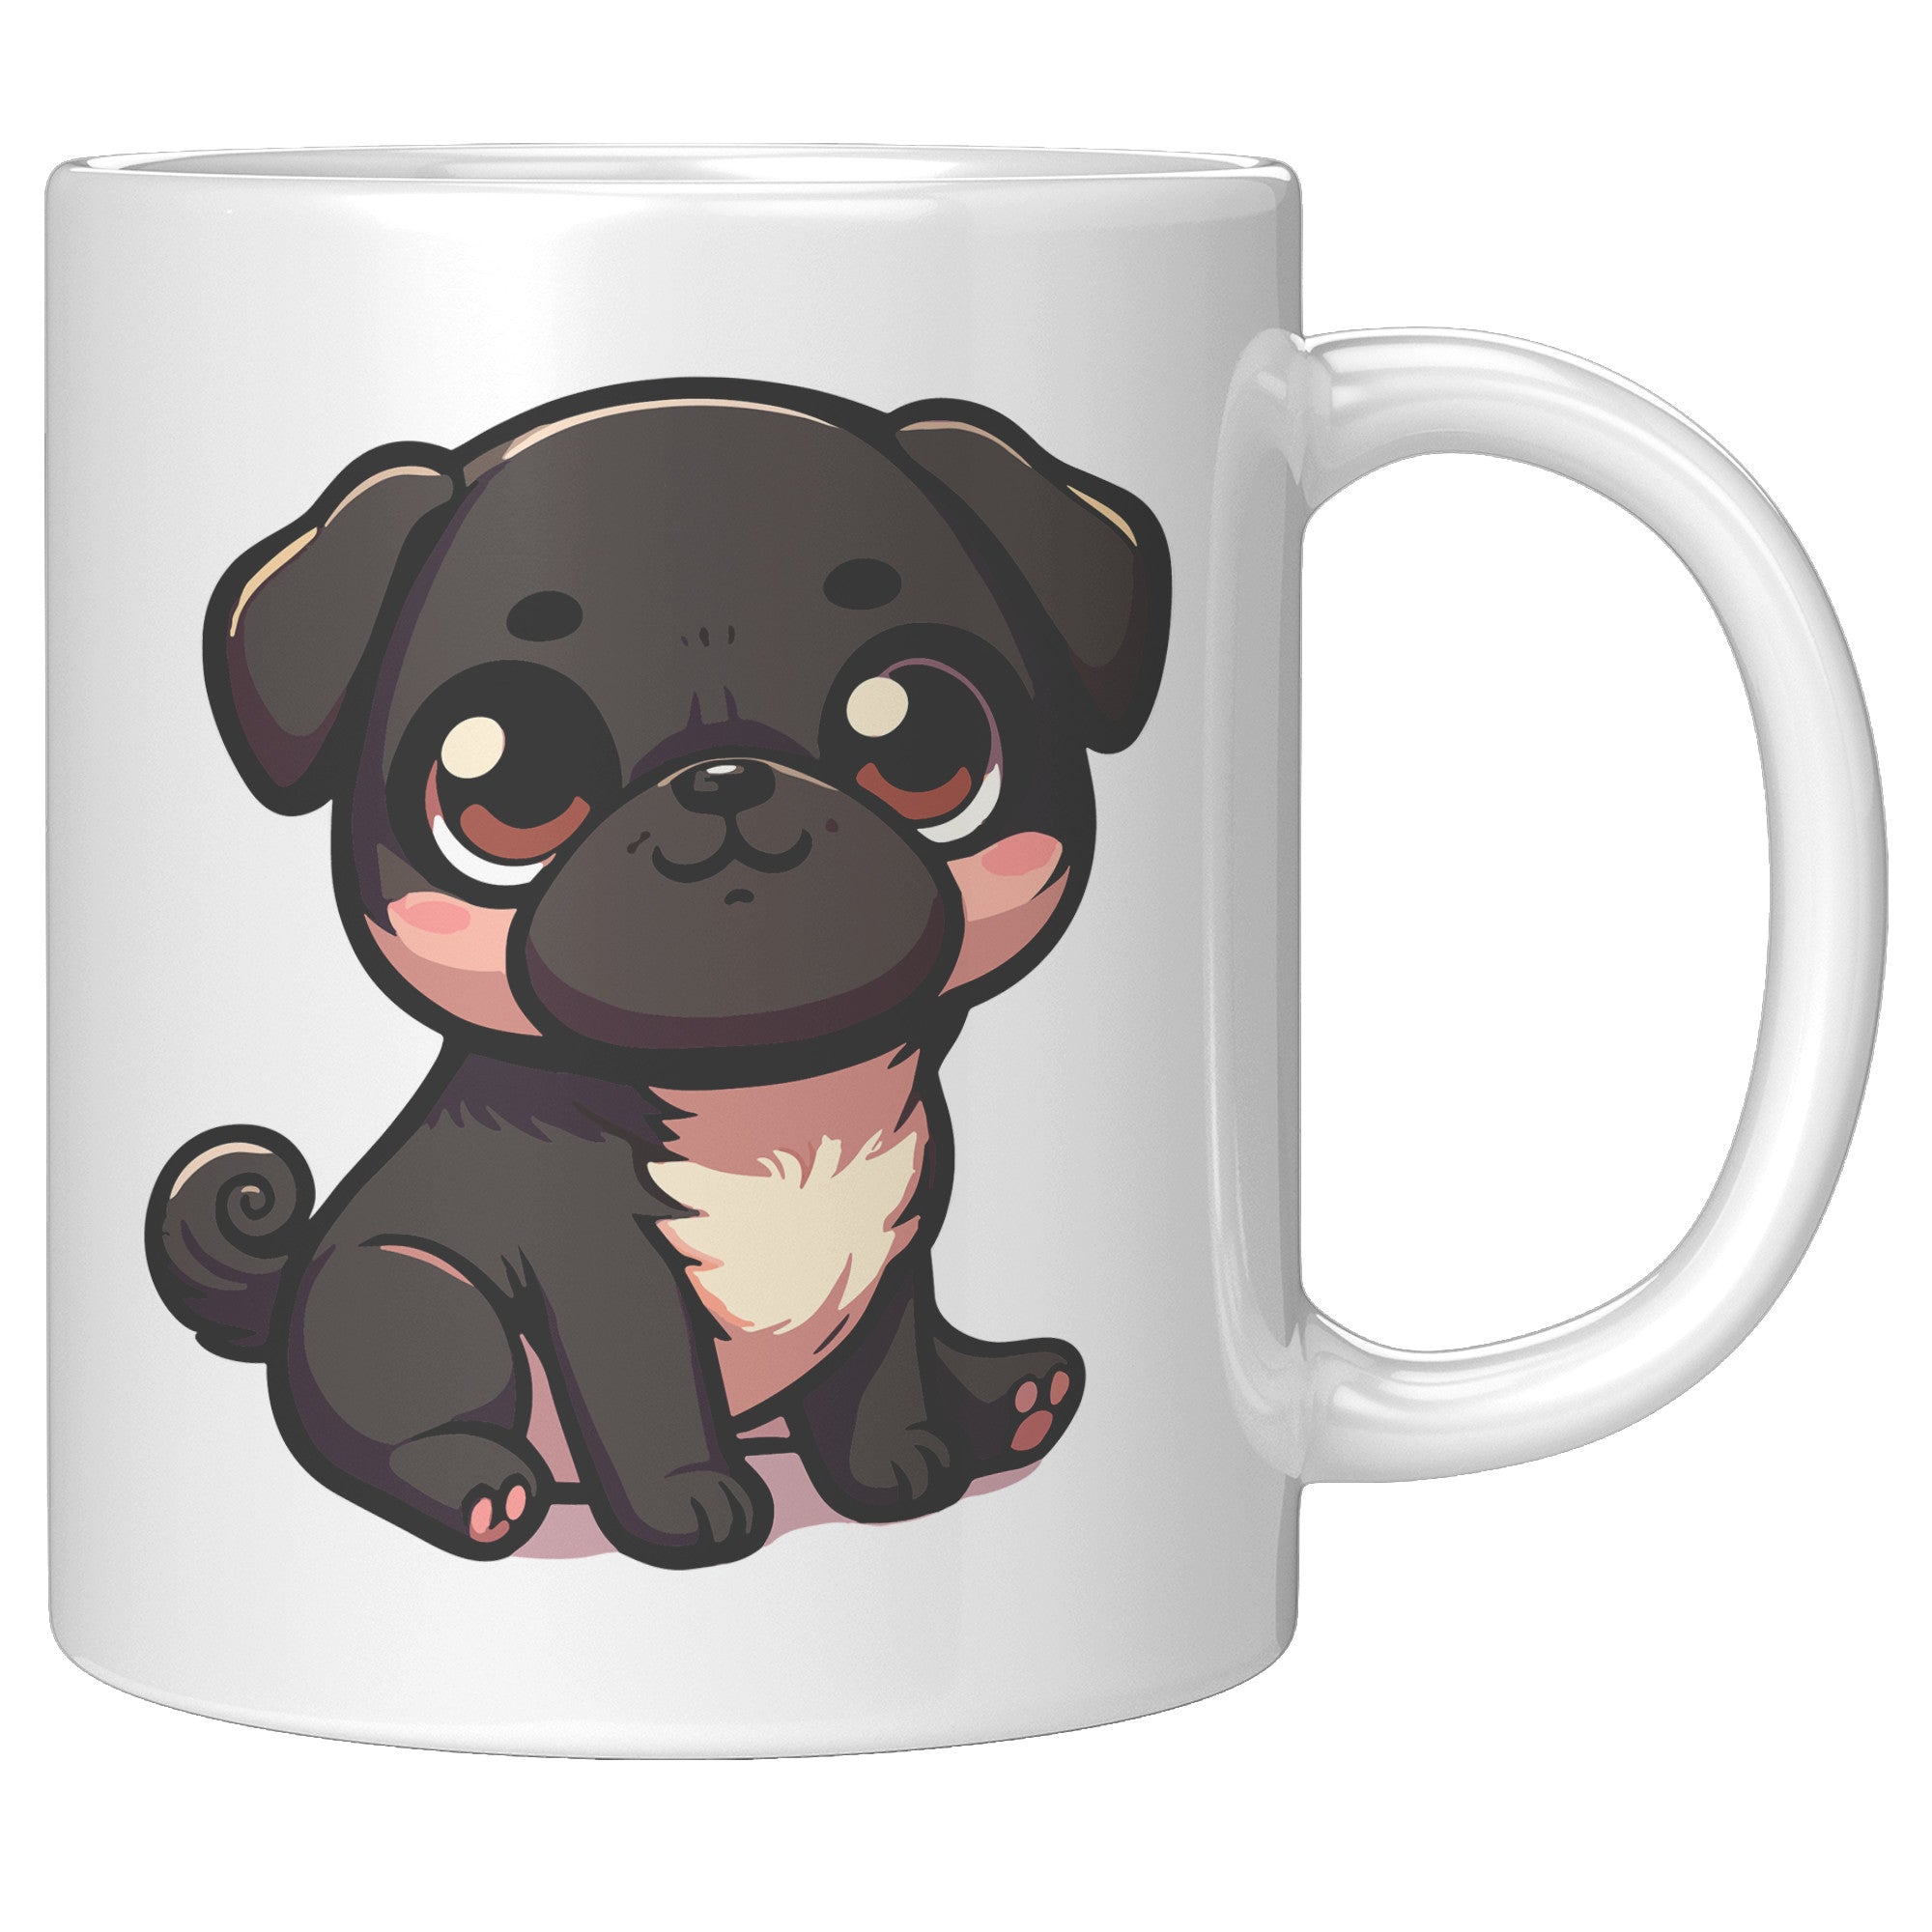 11oz Adorable Pug Cartoon Coffee Mug - Pug Lover Coffee Mug - Perfect Gift for Pug Owners - Cute Wrinkly Dog Coffee Mug" - V